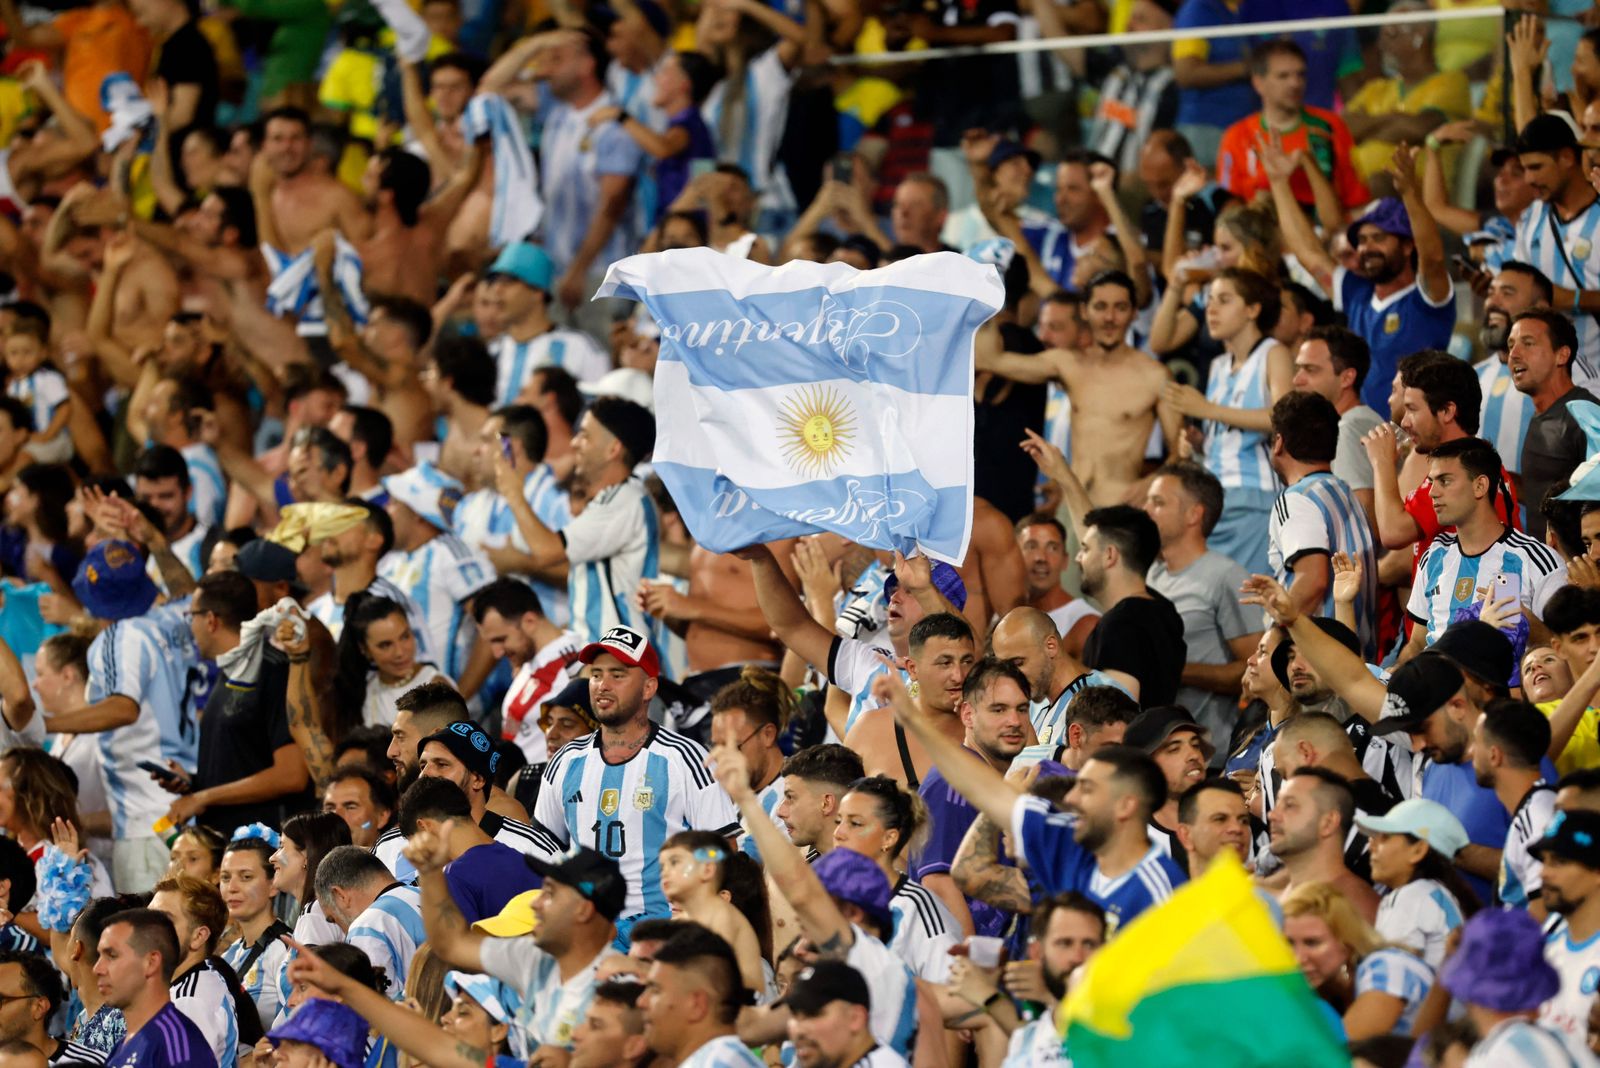 Argentinos usam termo racista para atacar brasileiros nas redes sociais após confusão no Maracanã (Foto: DANIEL RAMALHO/AFP via Getty Images)